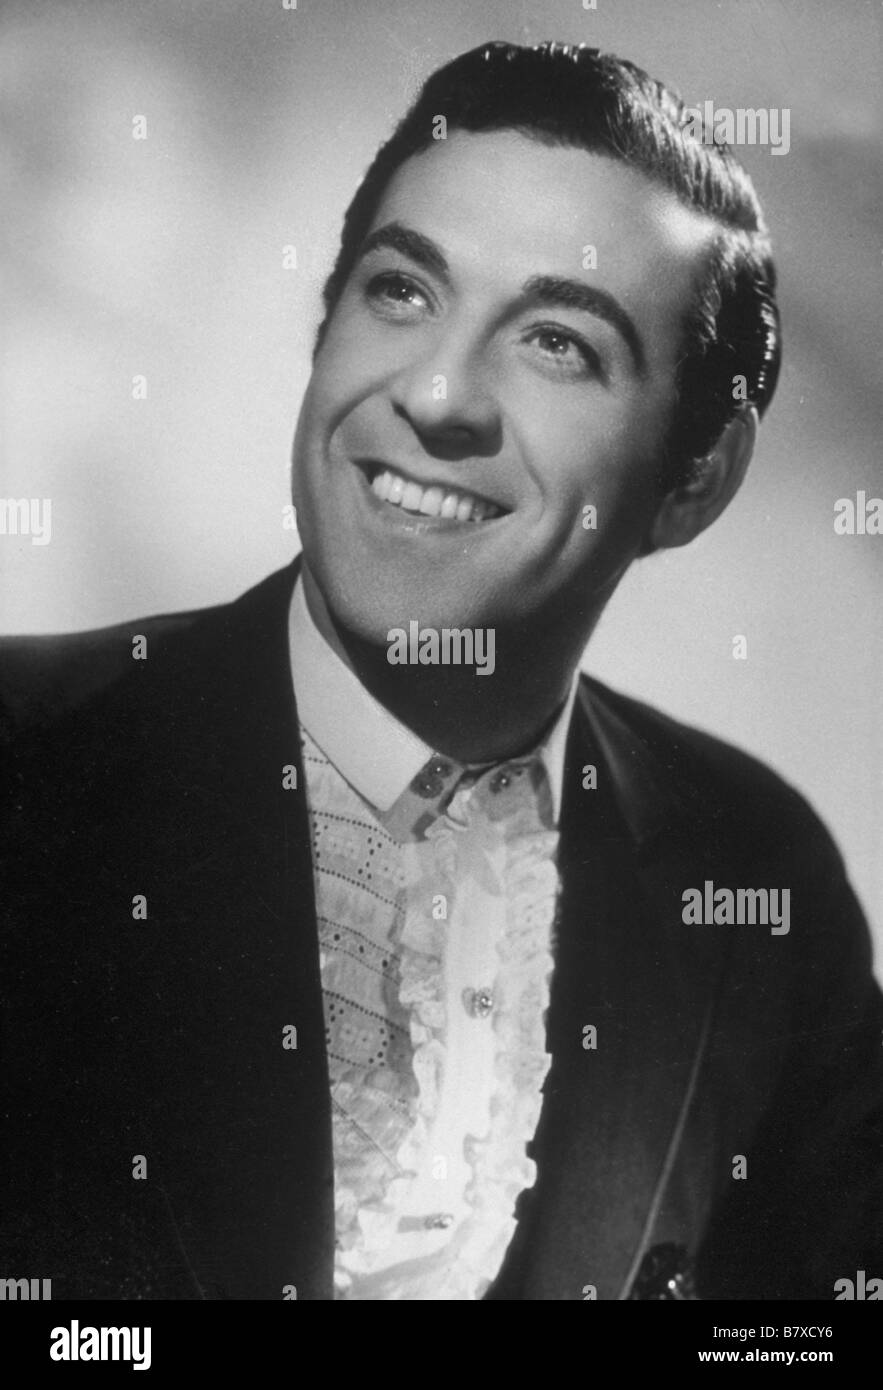 Luis Mariano, chanteur espagnol d'opérette. Vers 1950. Stock Photo